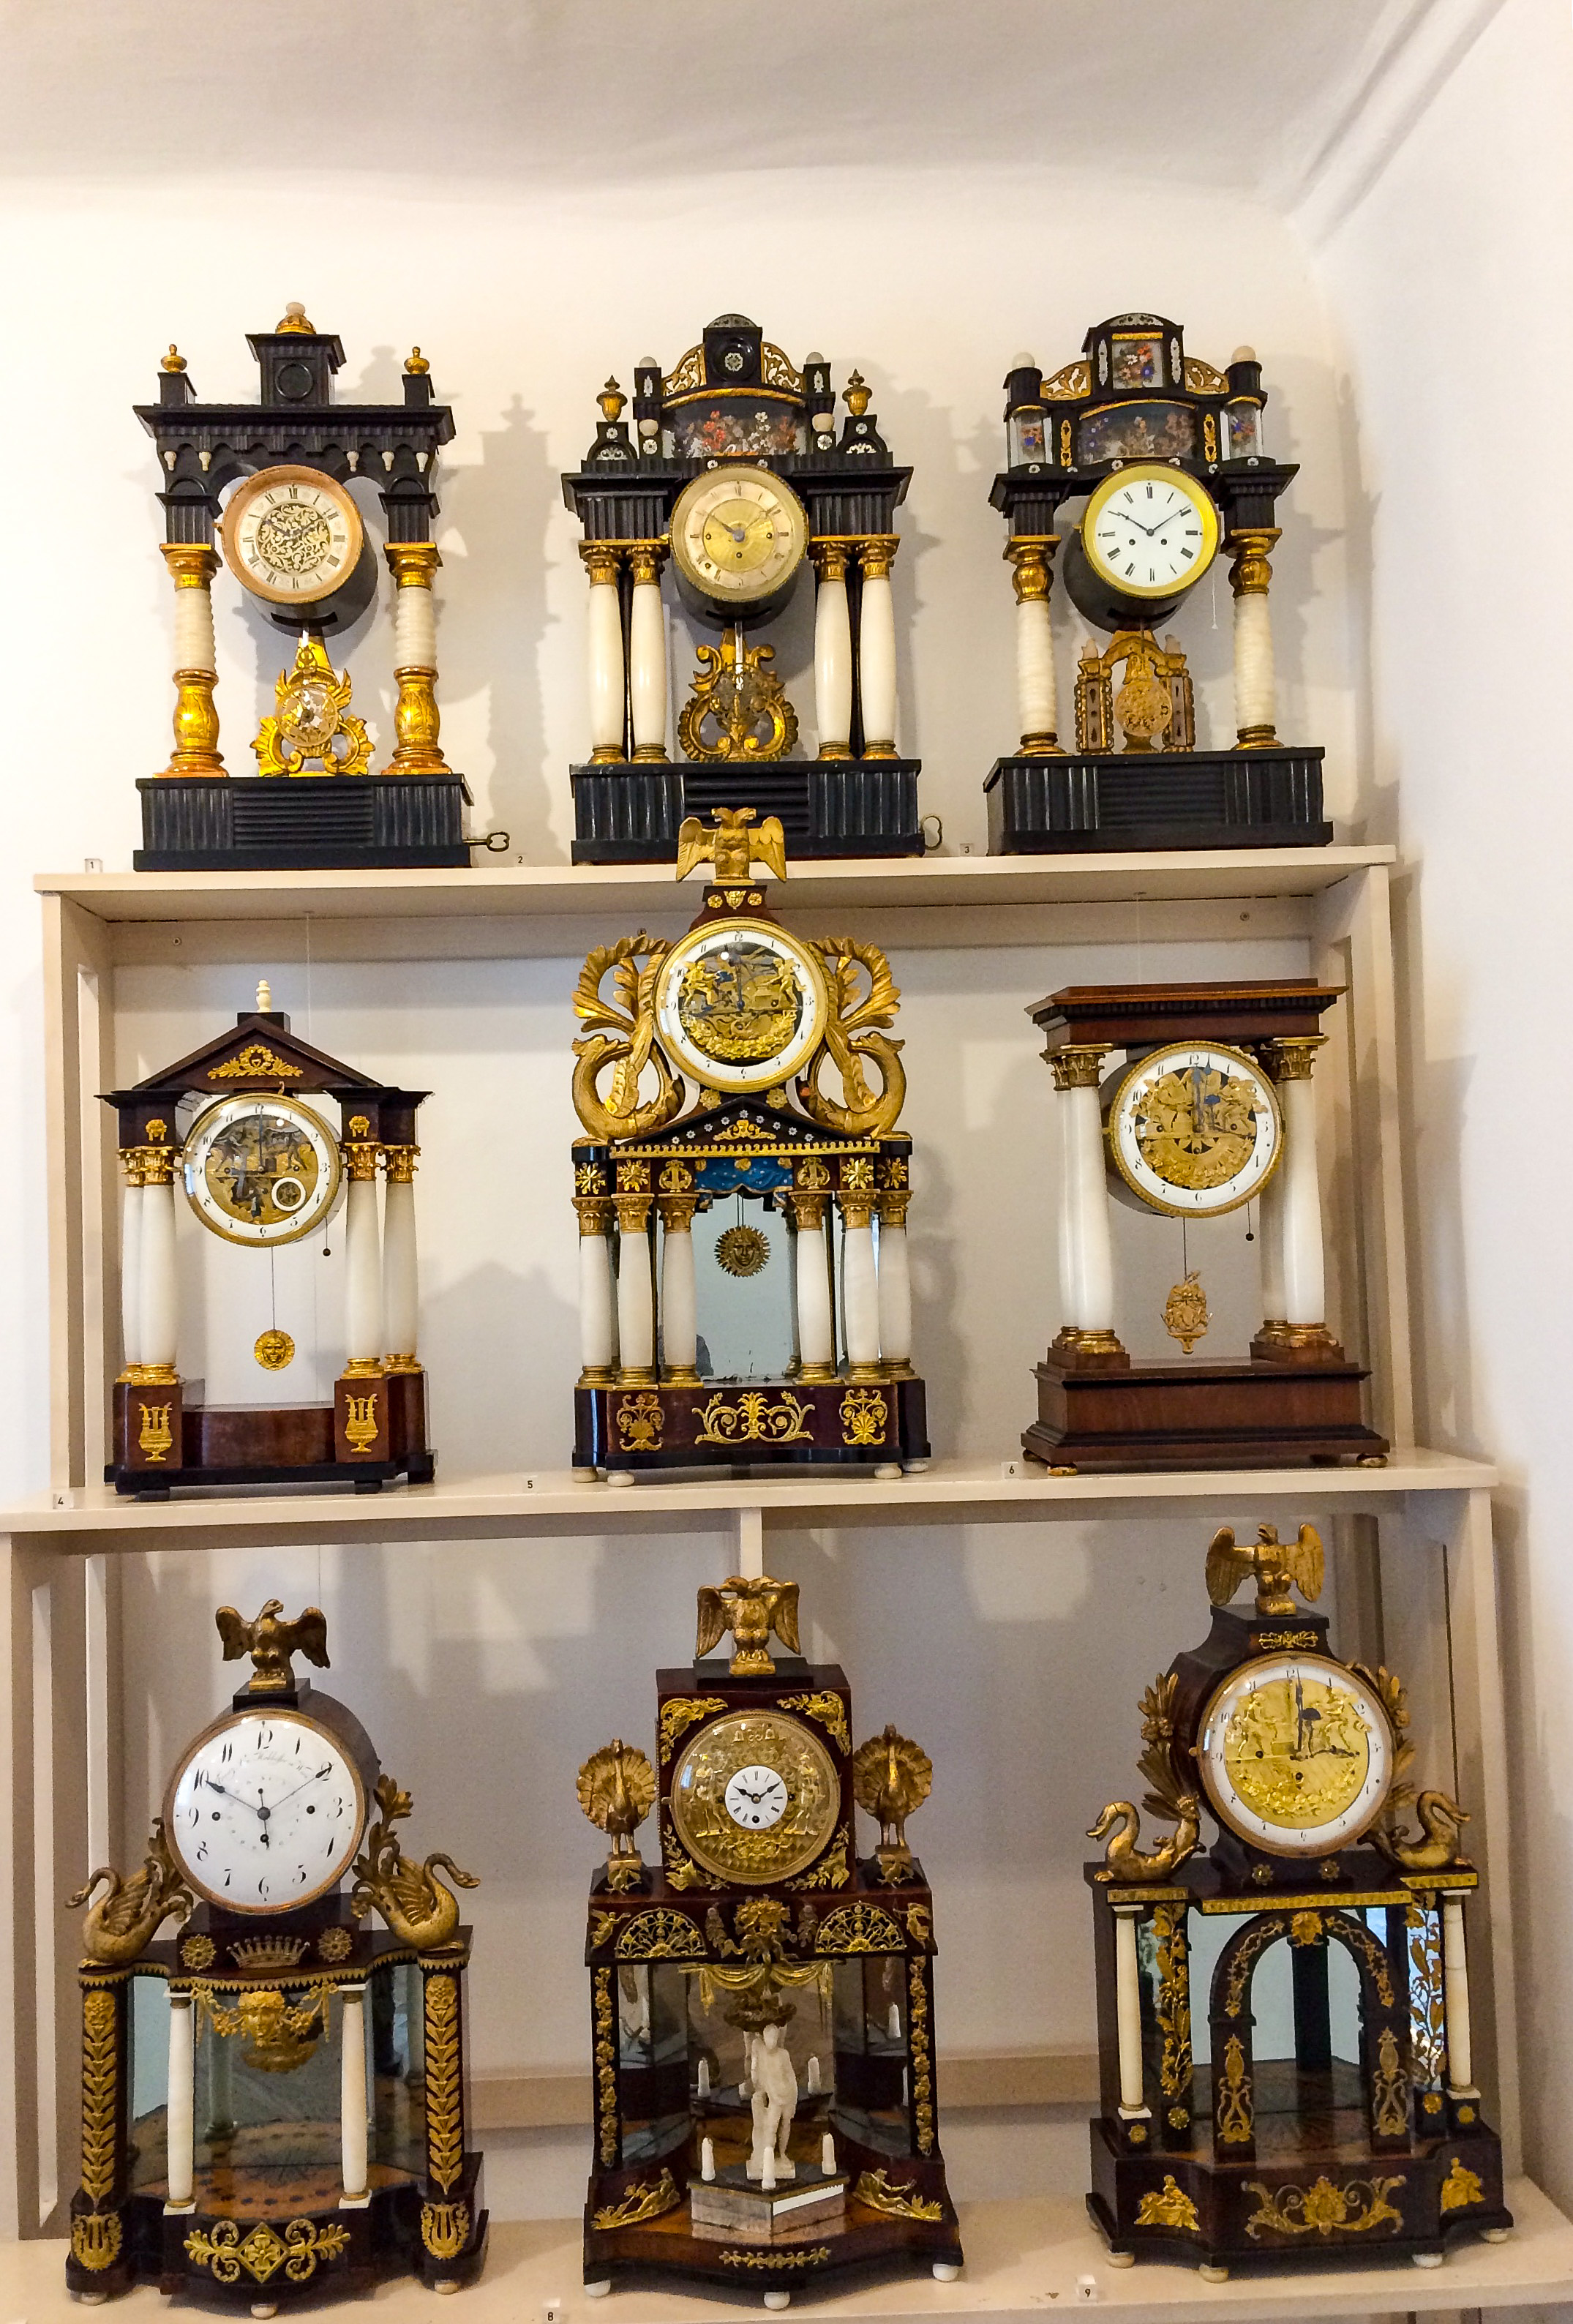 В каком городе музей часов. Музей часов Вена Австрия. Австрия. Вена. Uhrenmuseum. Часы в музее. Музей часов экспонаты.